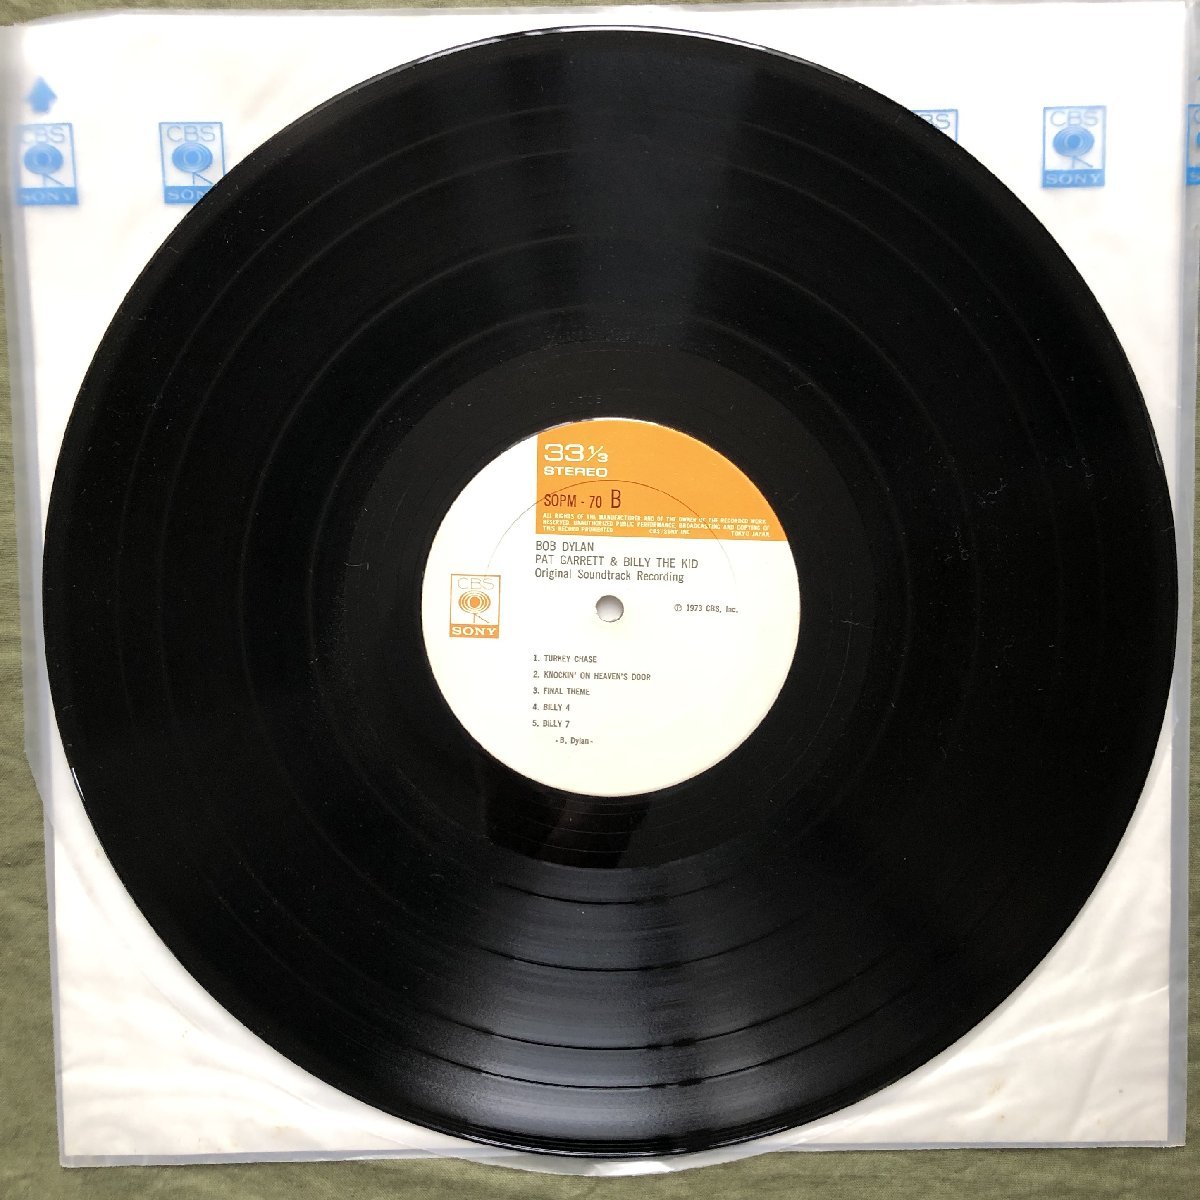 傷なし美盤 美ジャケ 美品 1973年 国内盤 ボブ・ディラン Bob Dylan LPレコード ビリー・ザ・キッド Pat Garrett & Billy The Kid 帯付の画像10